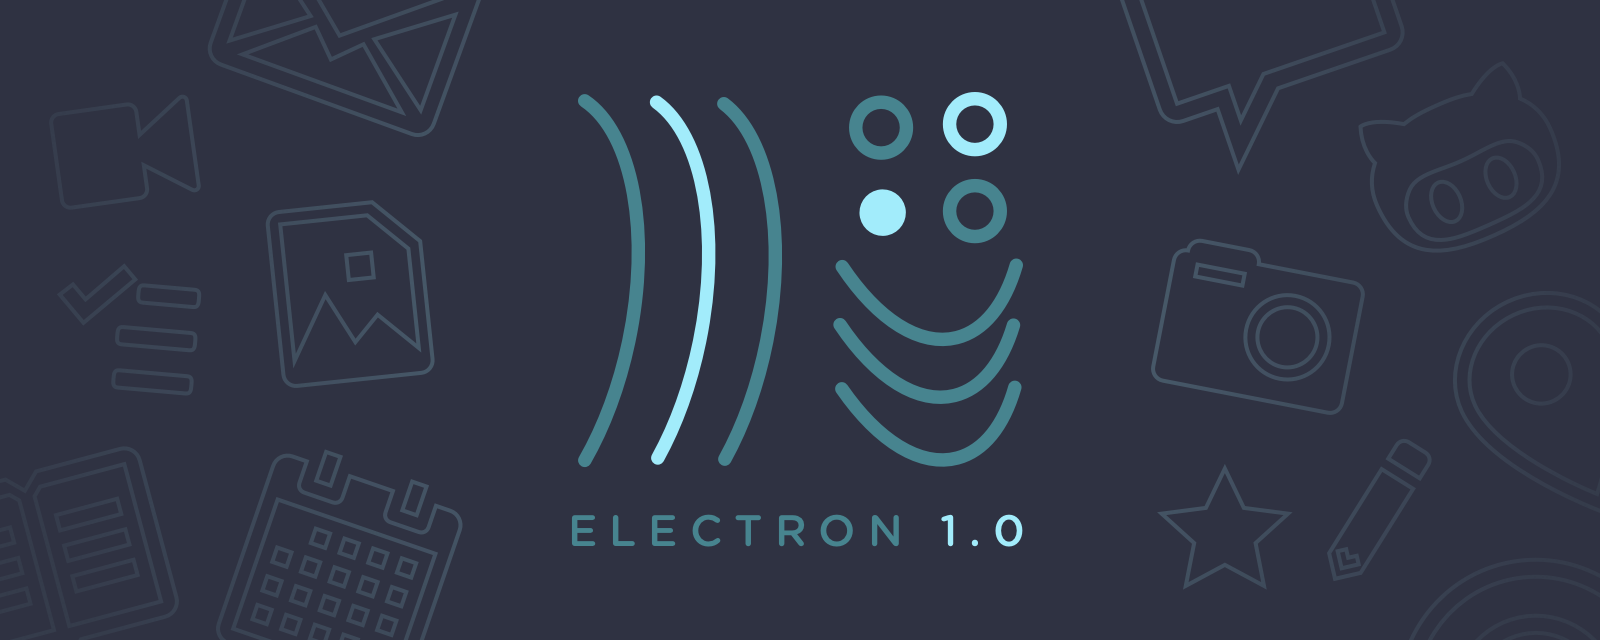 Electron 1.0